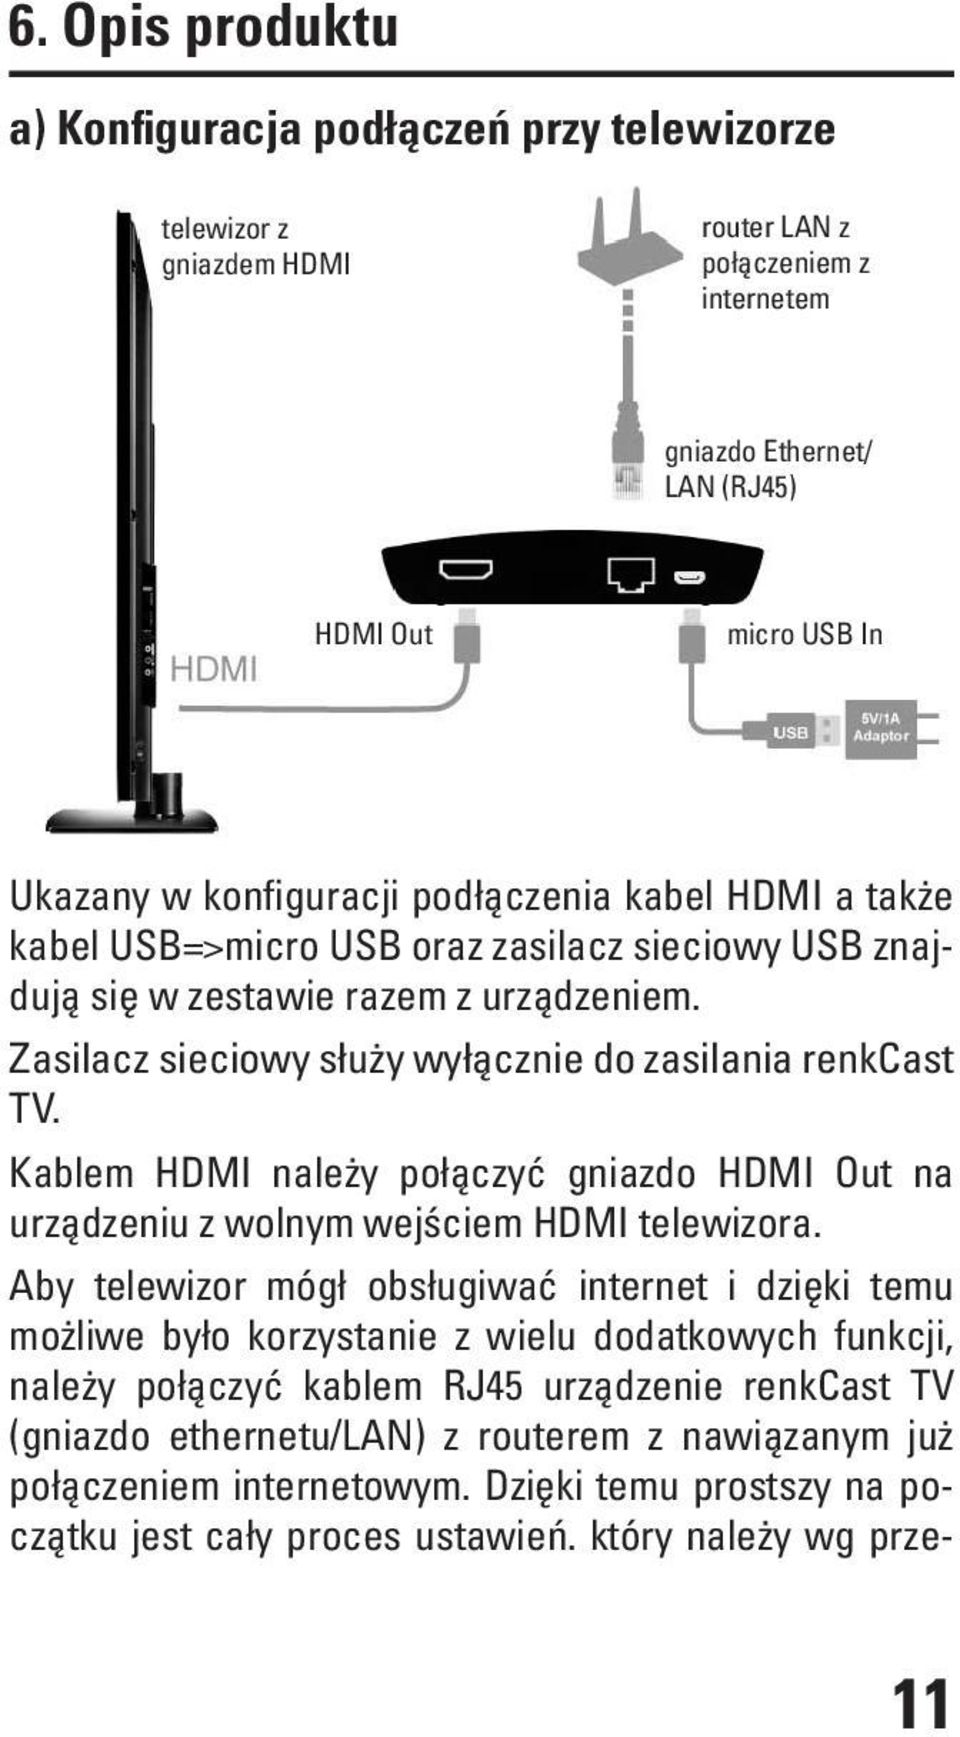 który należy wg przetelewizor z gniazdem HDMI router LAN z połączeniem z internetem gniazdo Ethernet/ LAN (RJ45) HDMI Out micro USB In Ukazany w konfiguracji podłączenia kabel HDMI a także kabel